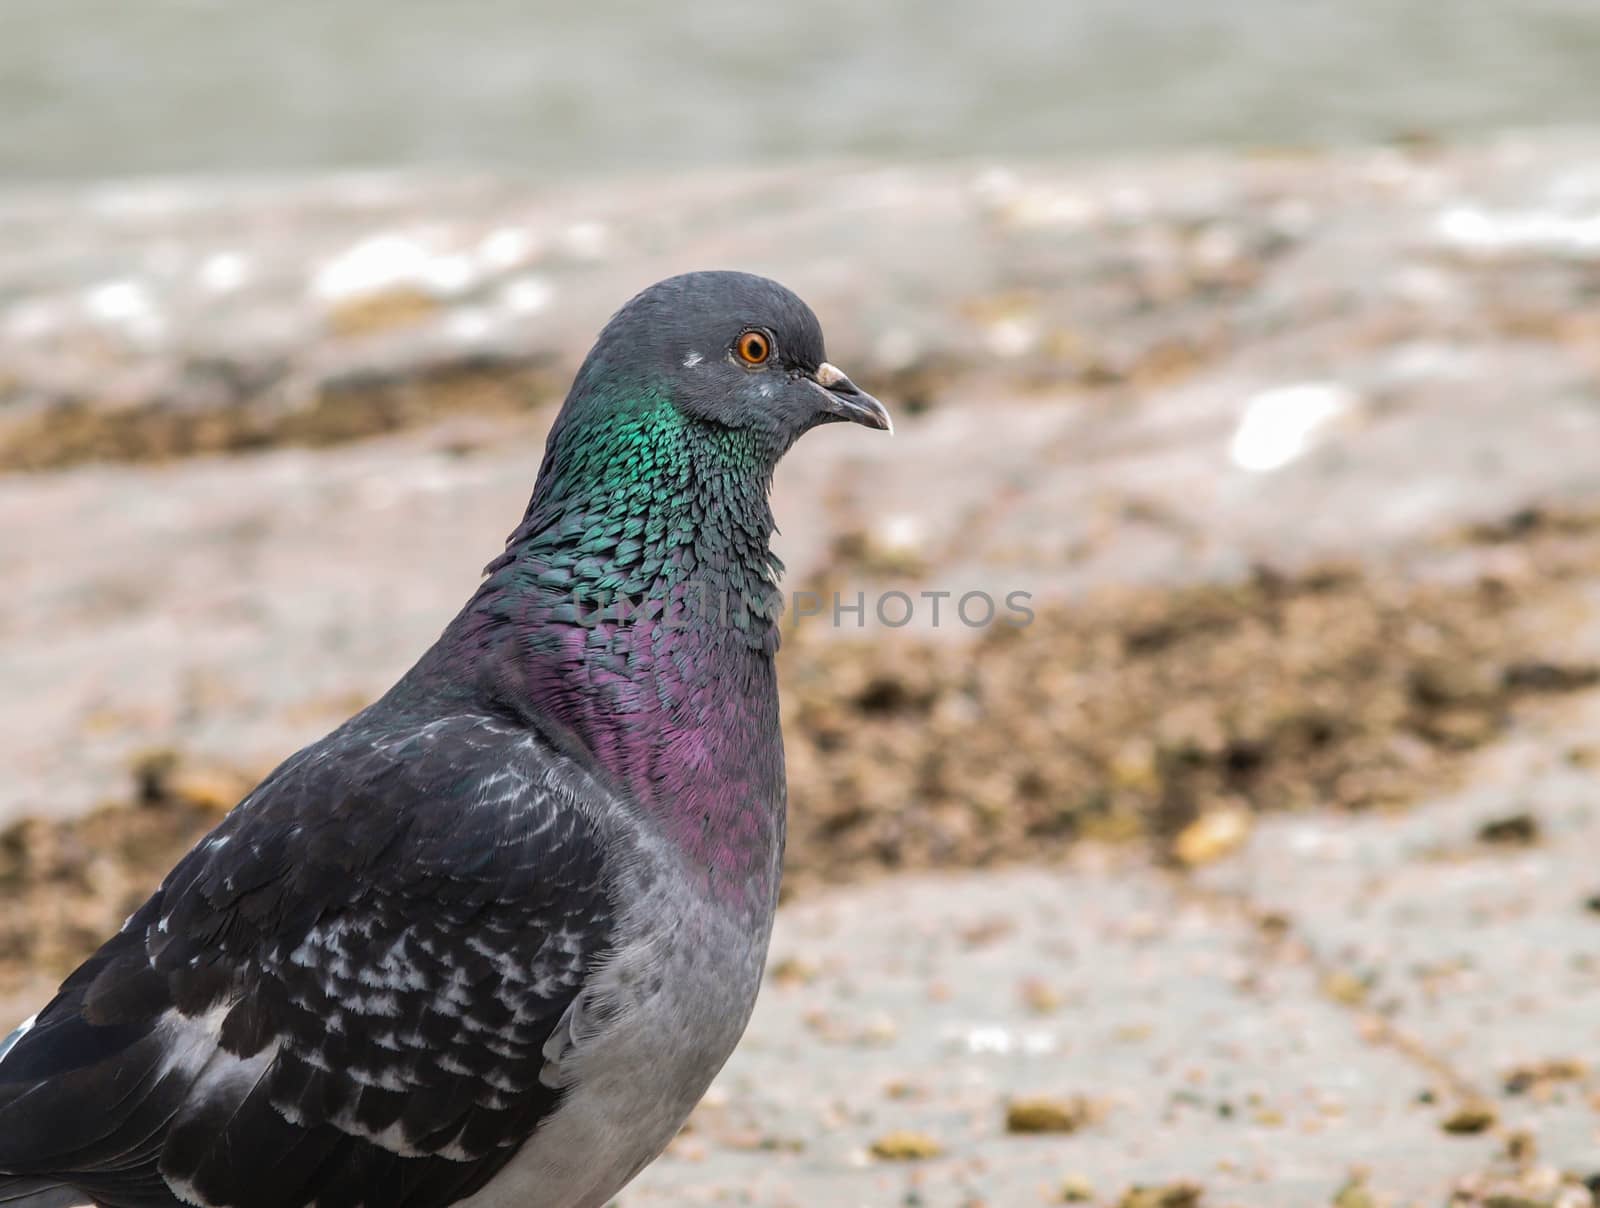 Blue-green pigeon by Arvebettum